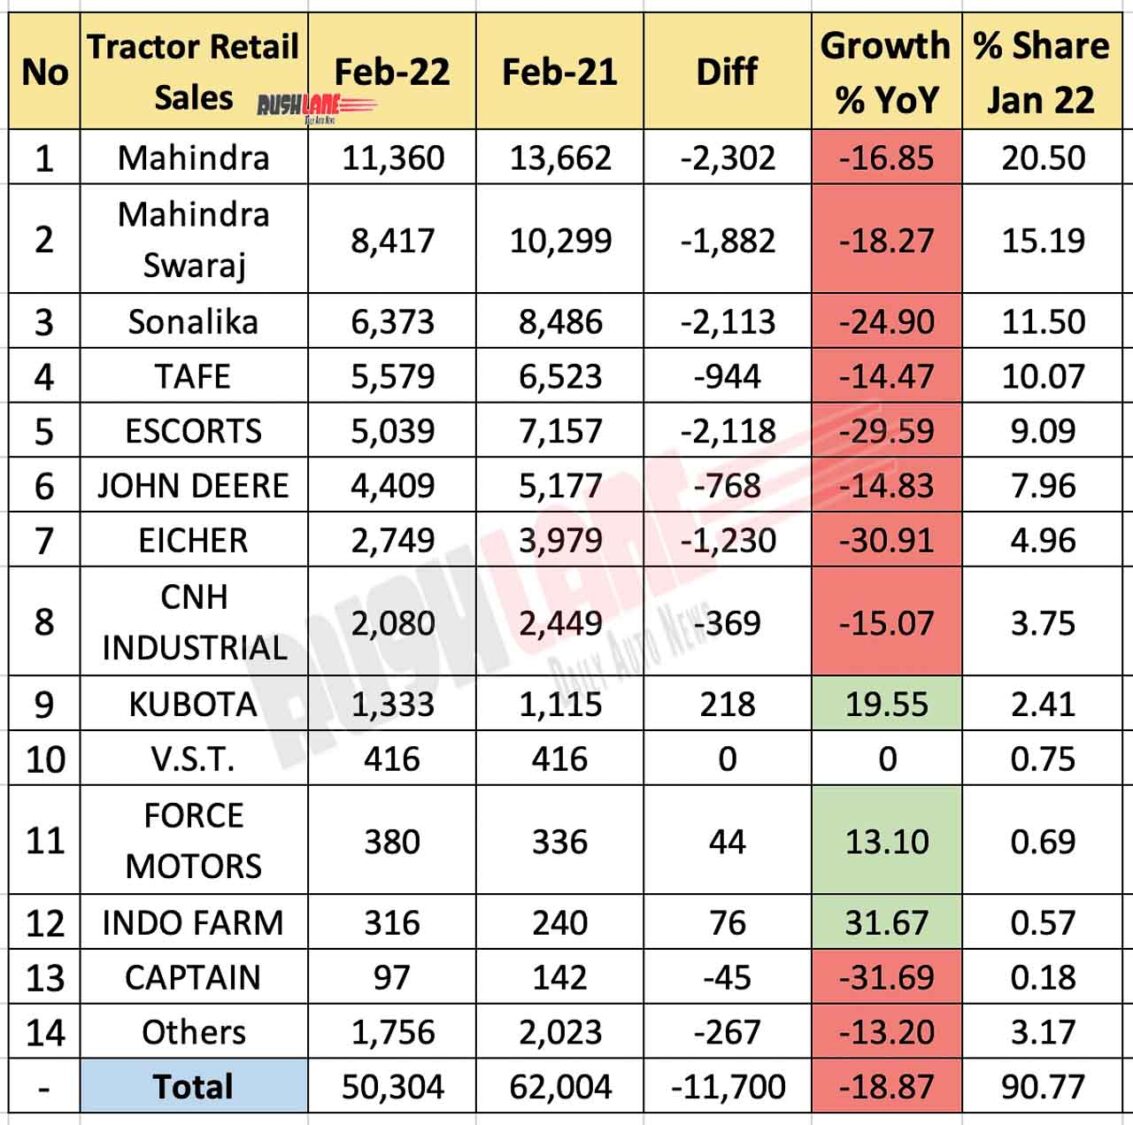 Tractor Retail Sales Feb 2022 vs Feb 2021 (YoY)